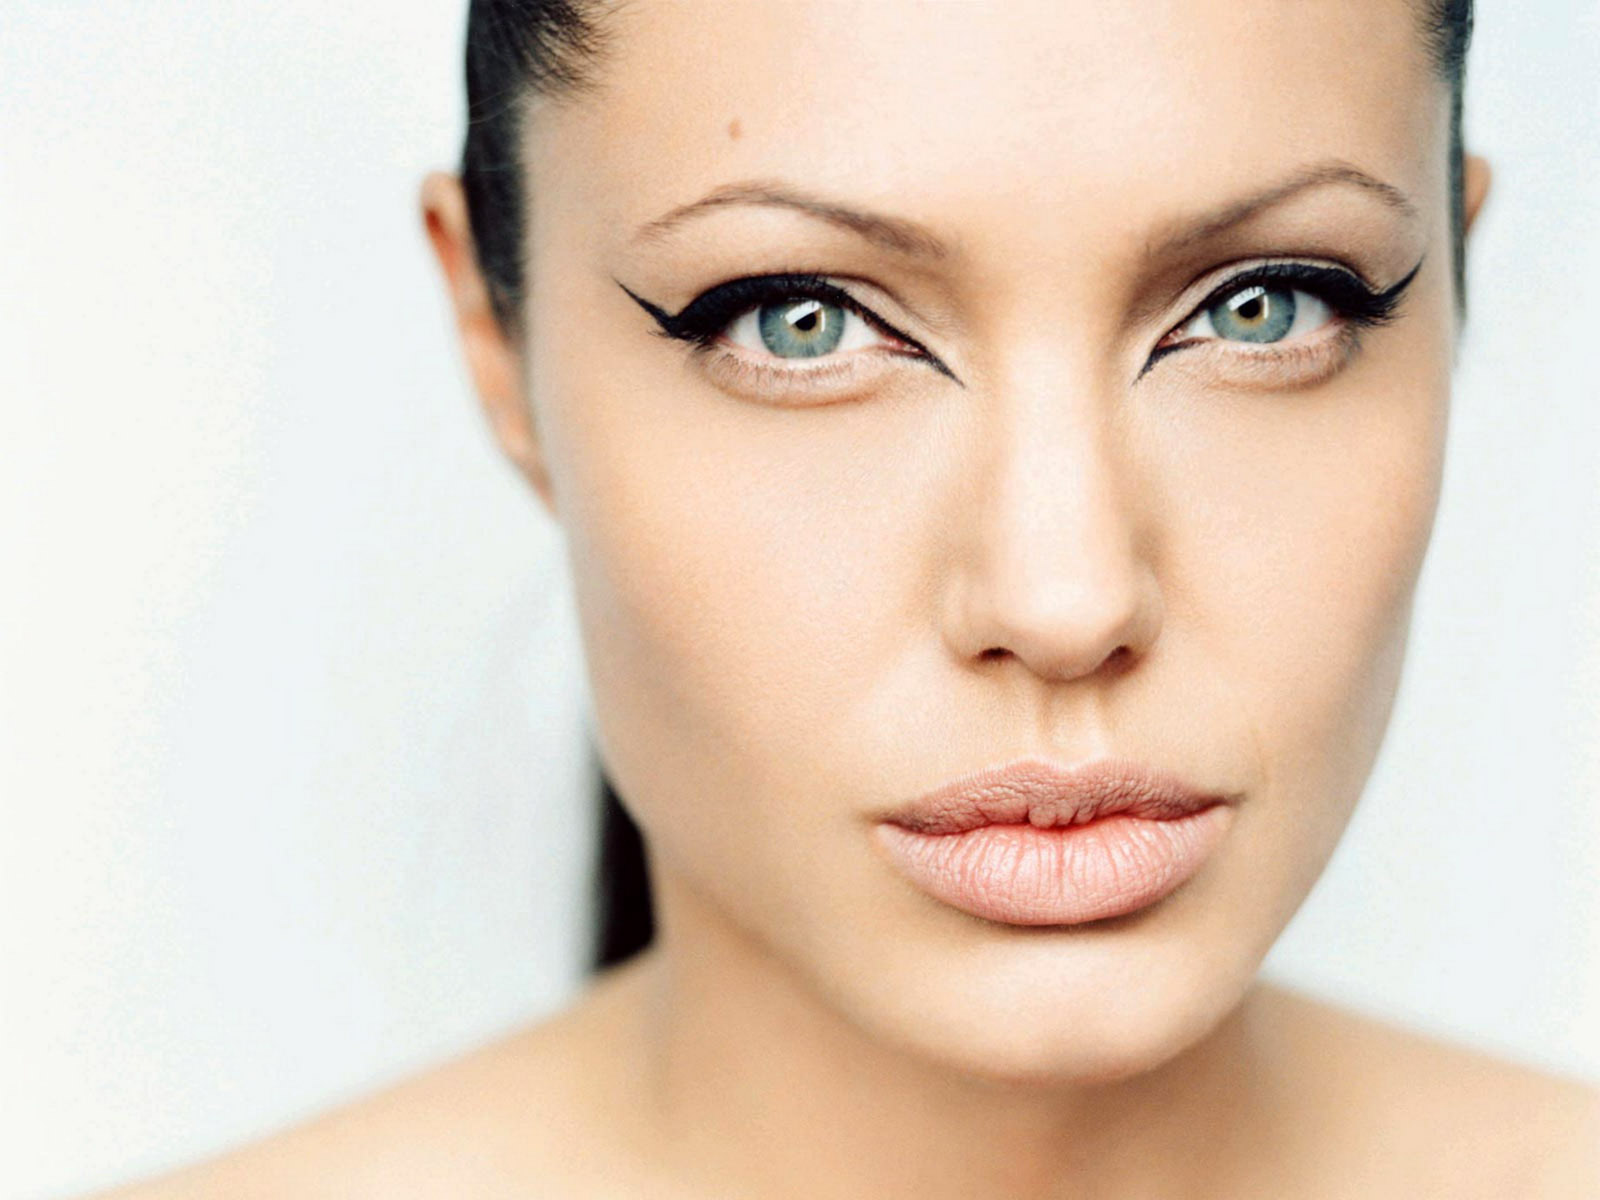 http://1.bp.blogspot.com/-zrppCyqulvc/T11jS6aMZjI/AAAAAAAAGDY/HbKLXQSXa3Q/s1600/Angelina-Jolie-blue-eyes.jpg